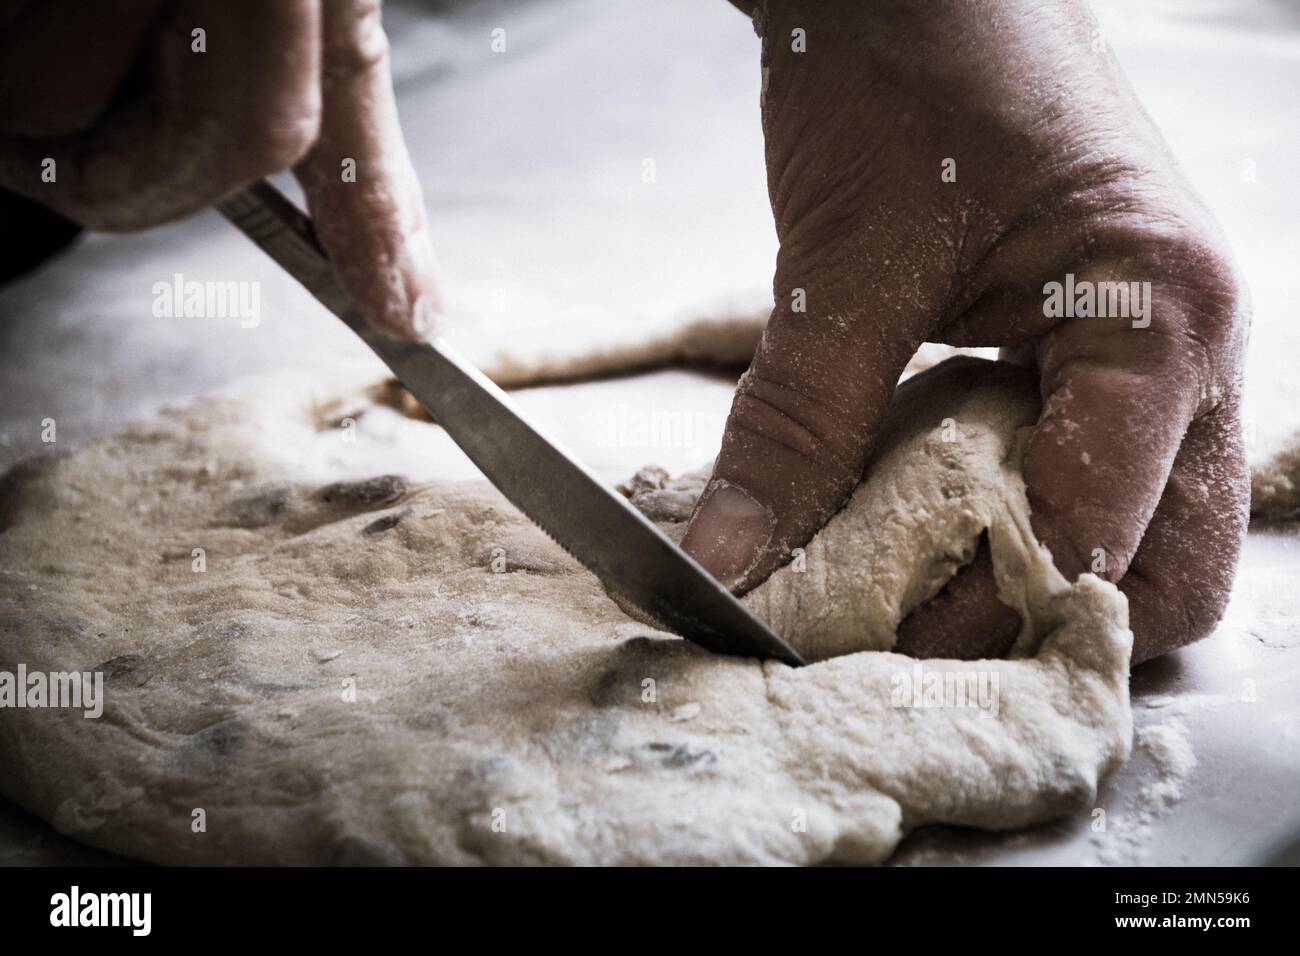 Le mani della nonna della donna che tagliano la pasta del pane su una superficie infarinata Foto Stock